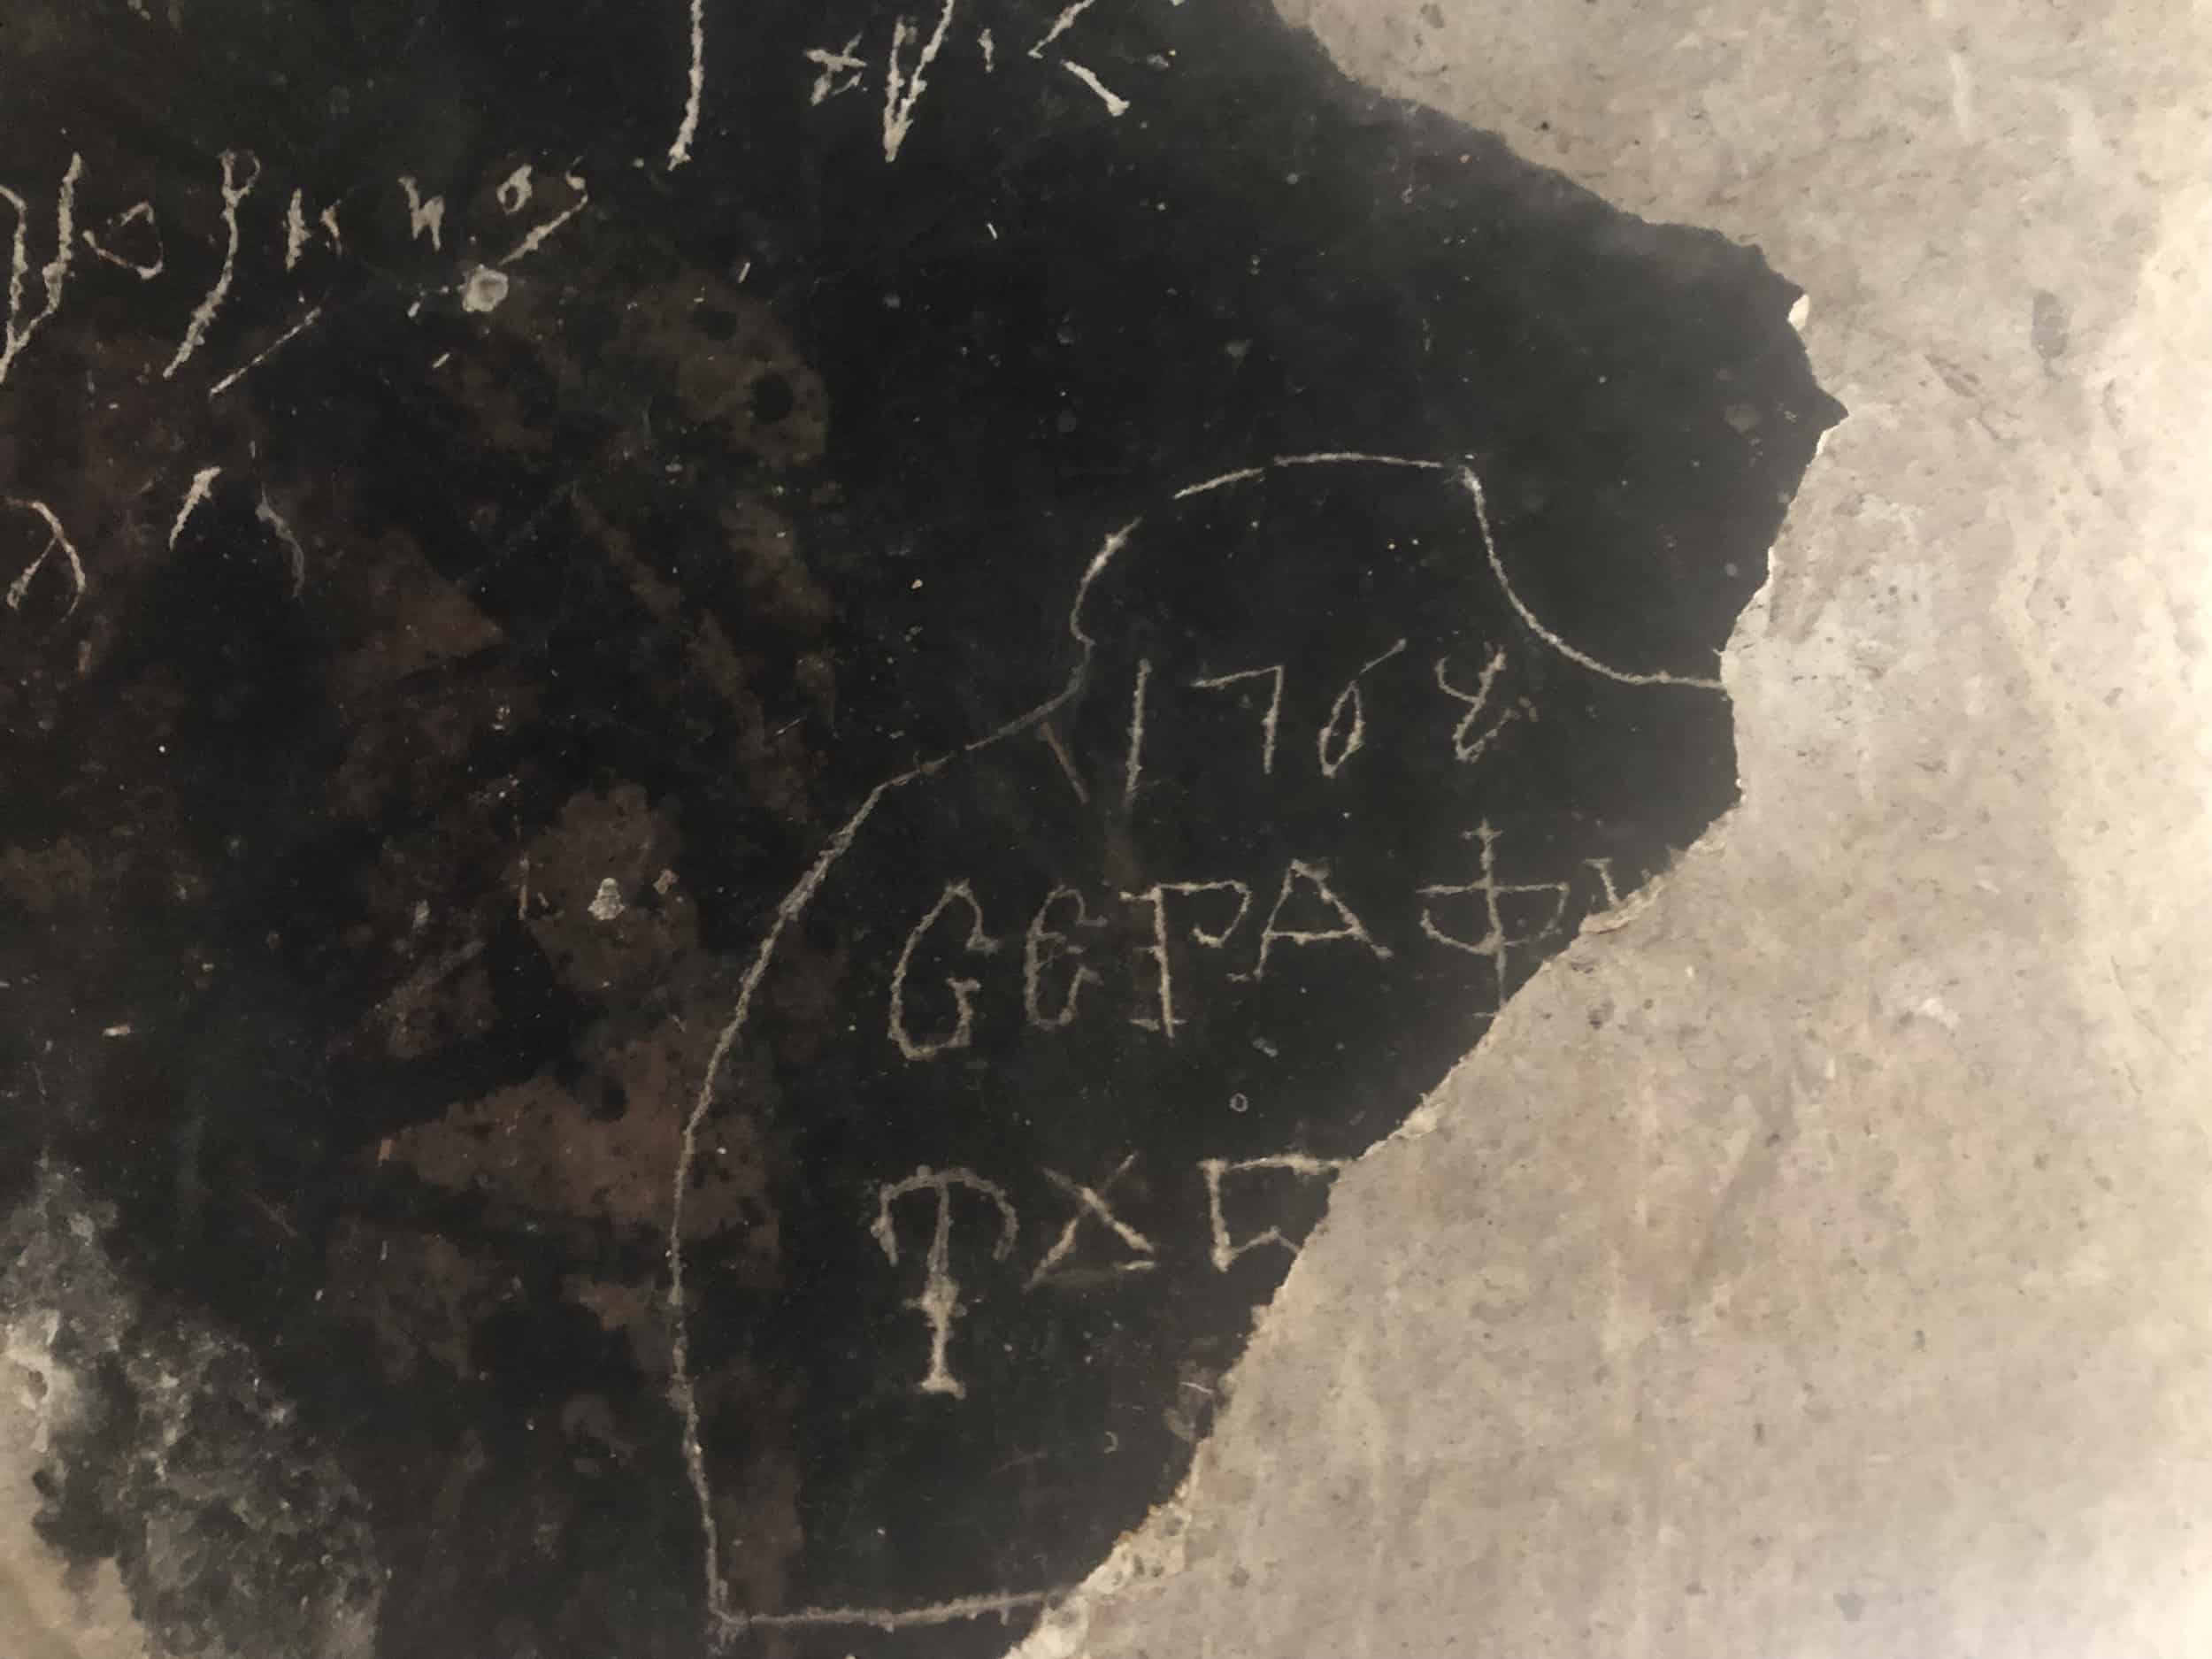 Graffiti in Greek written in 1768